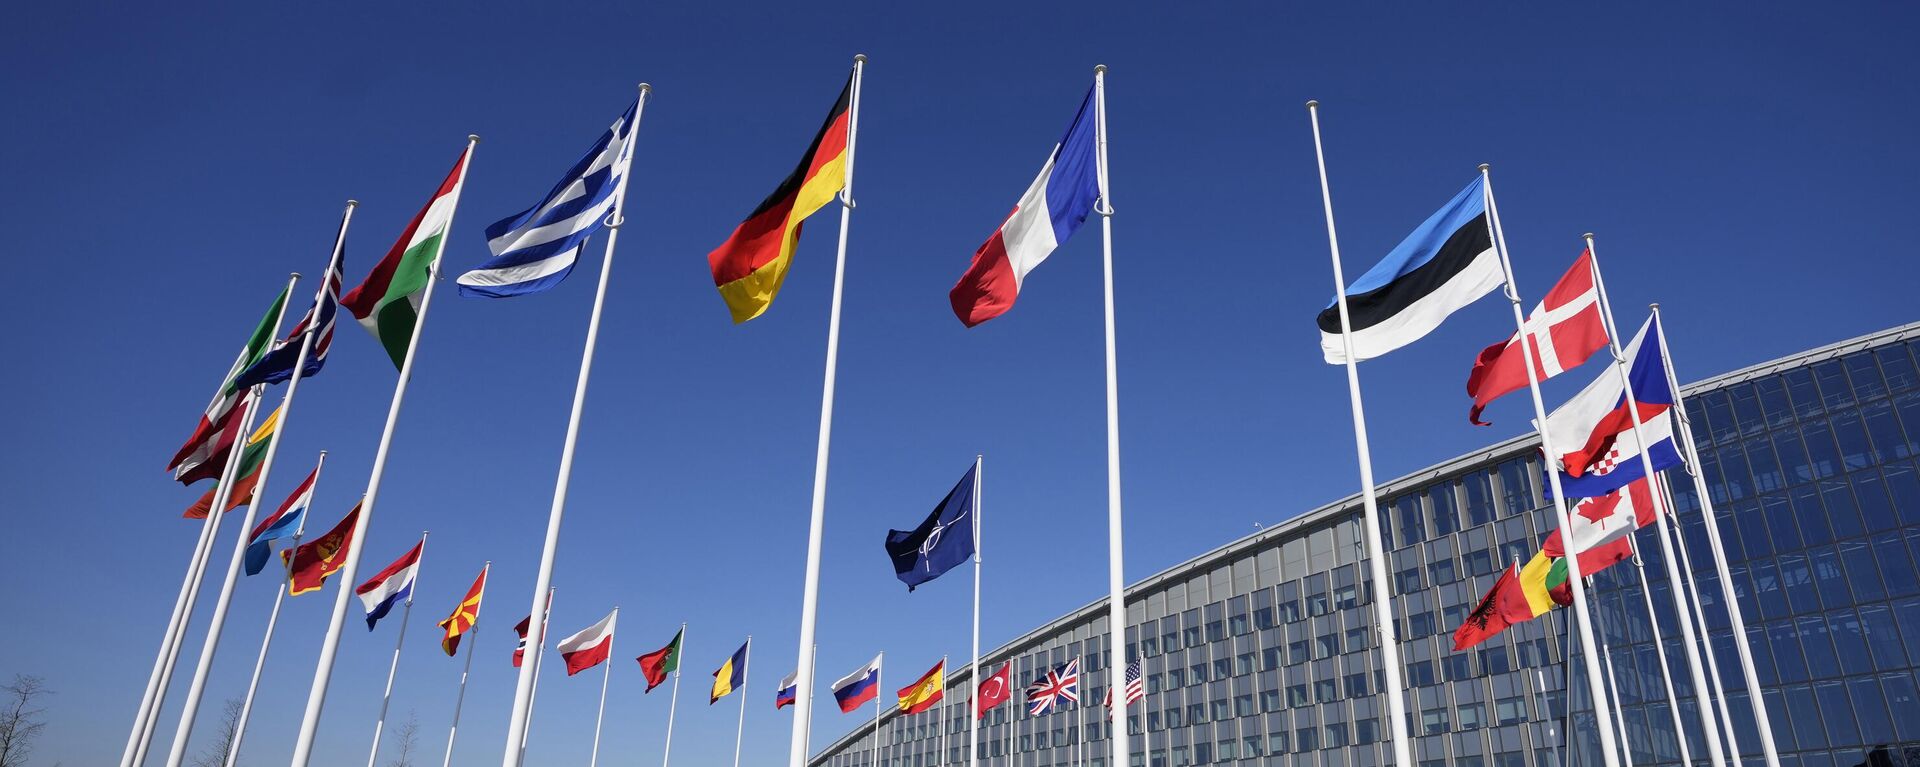 Pustoy flagshtok mejdu flagami Fransii i Estonii u zdaniya shtab-kvartiri NATO v Brussele - Sputnik O‘zbekiston, 1920, 08.01.2024